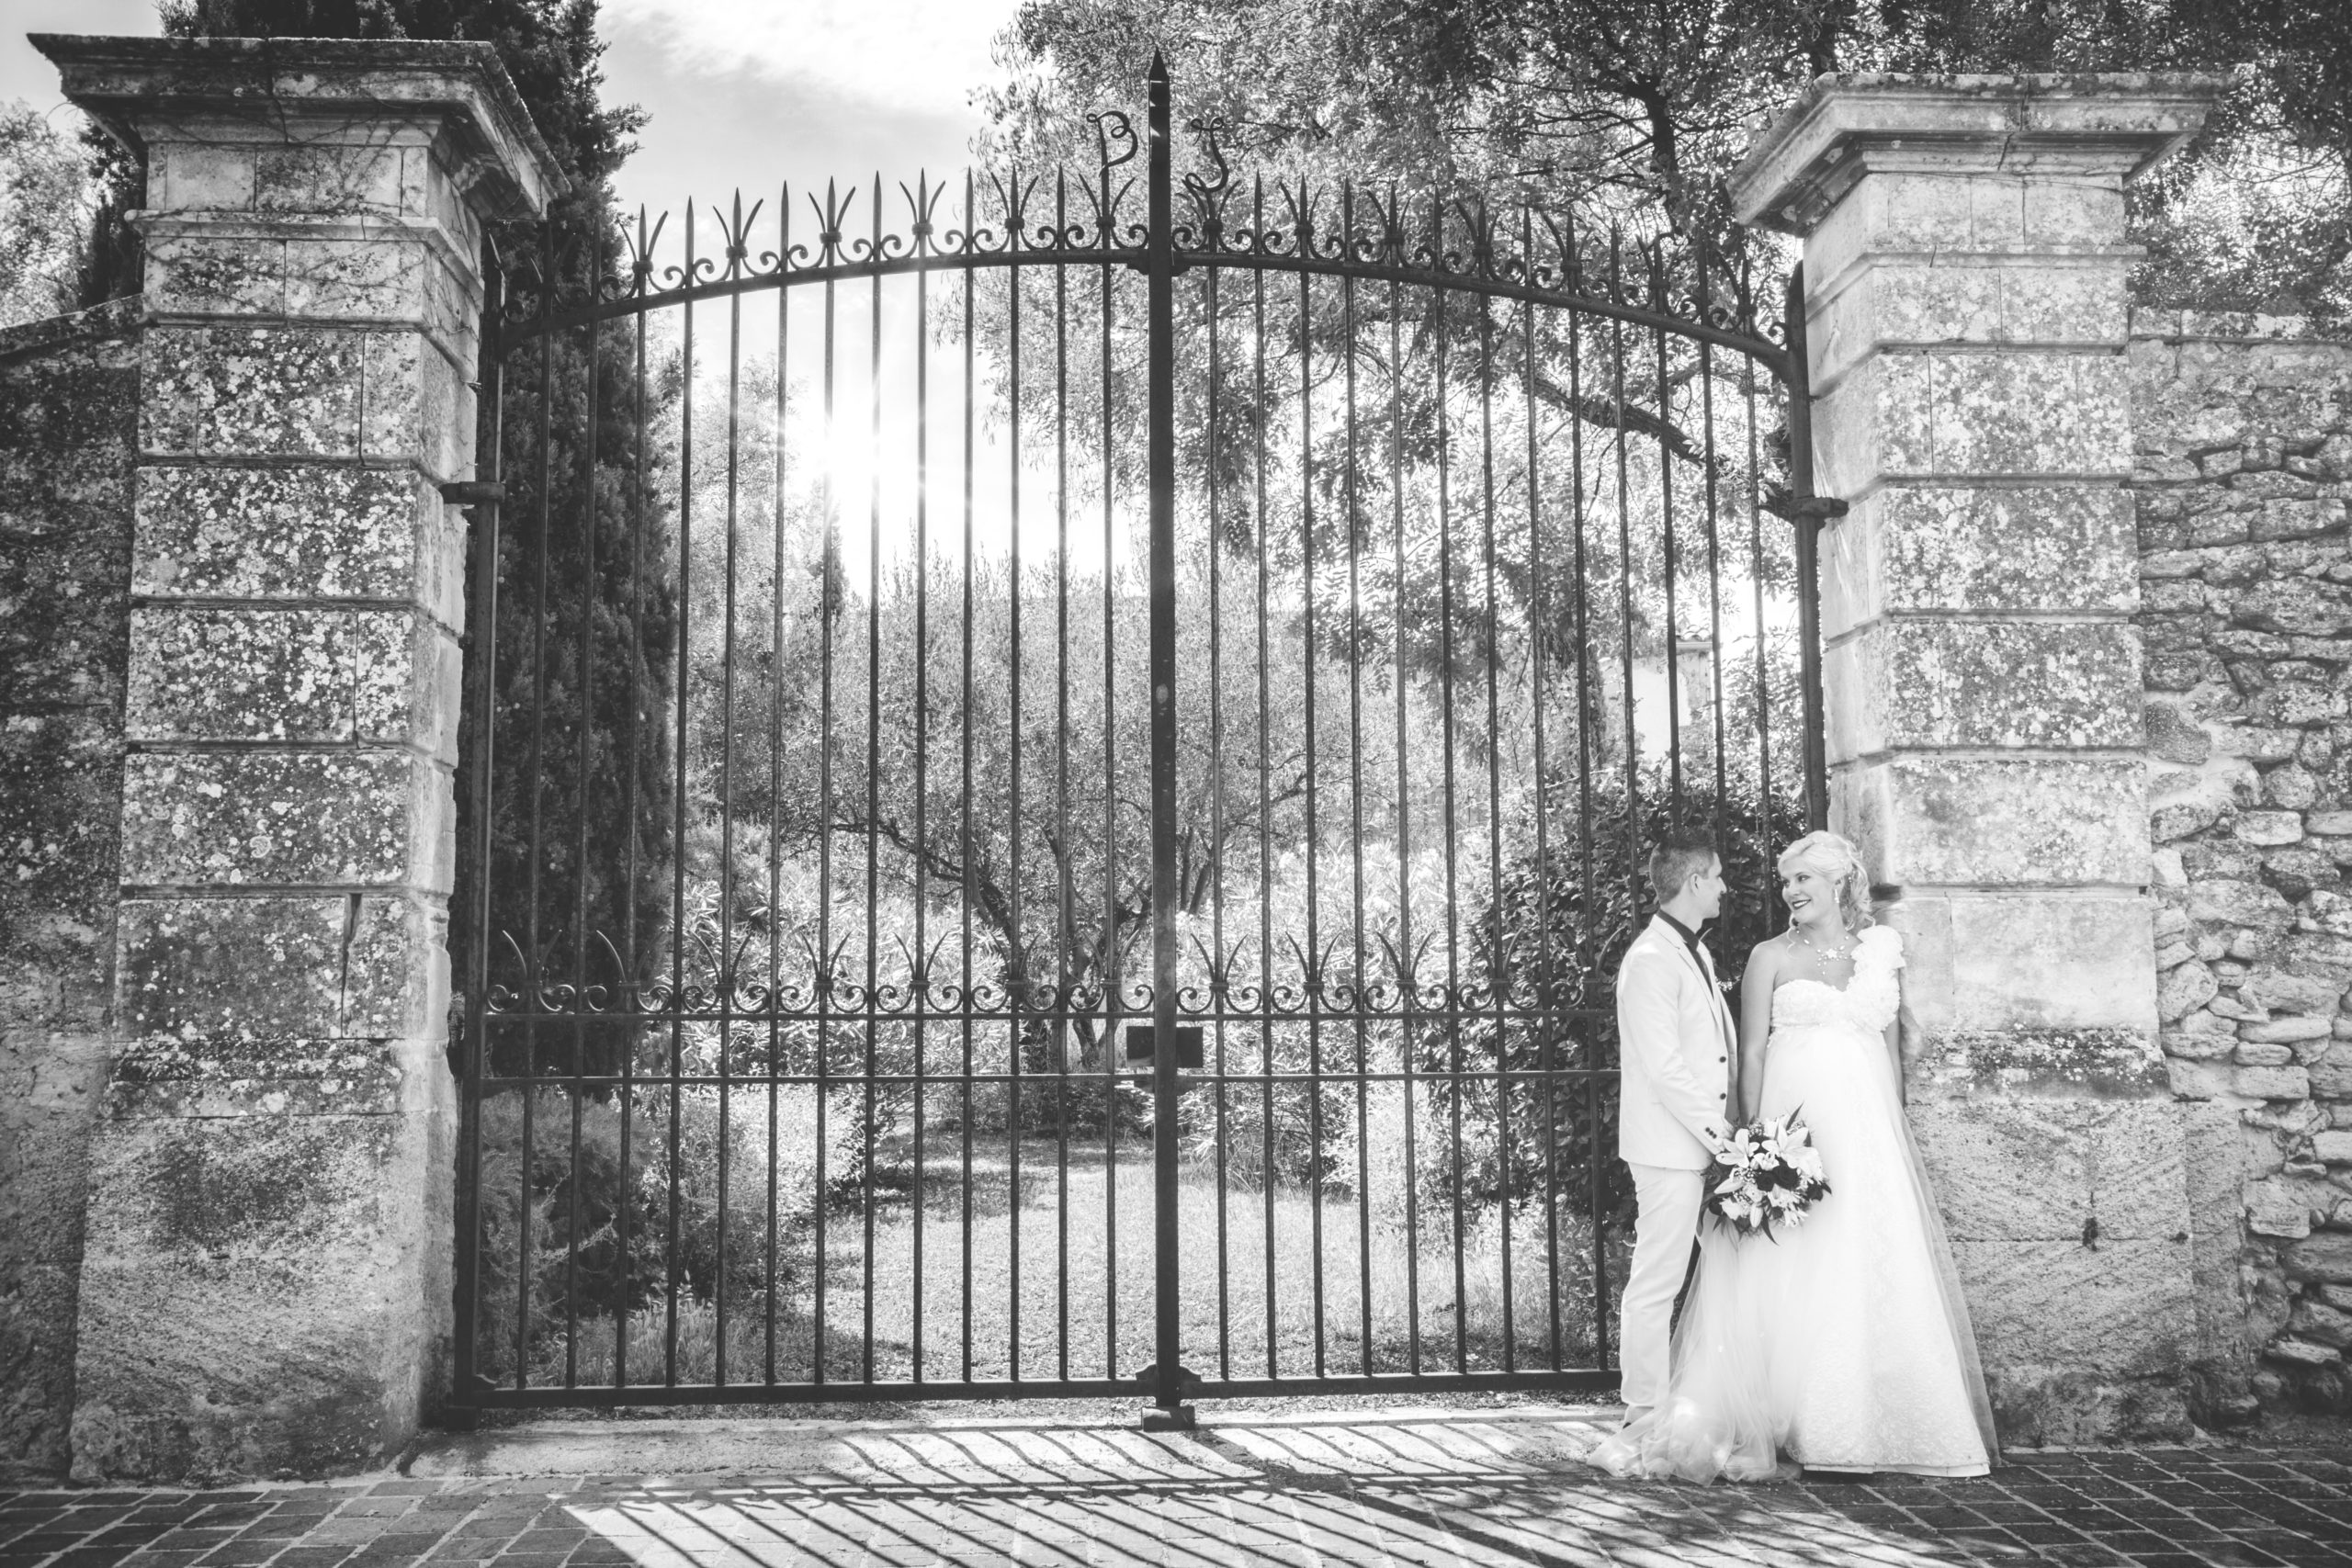 Photographe de mariage, portrait en noir et blanc